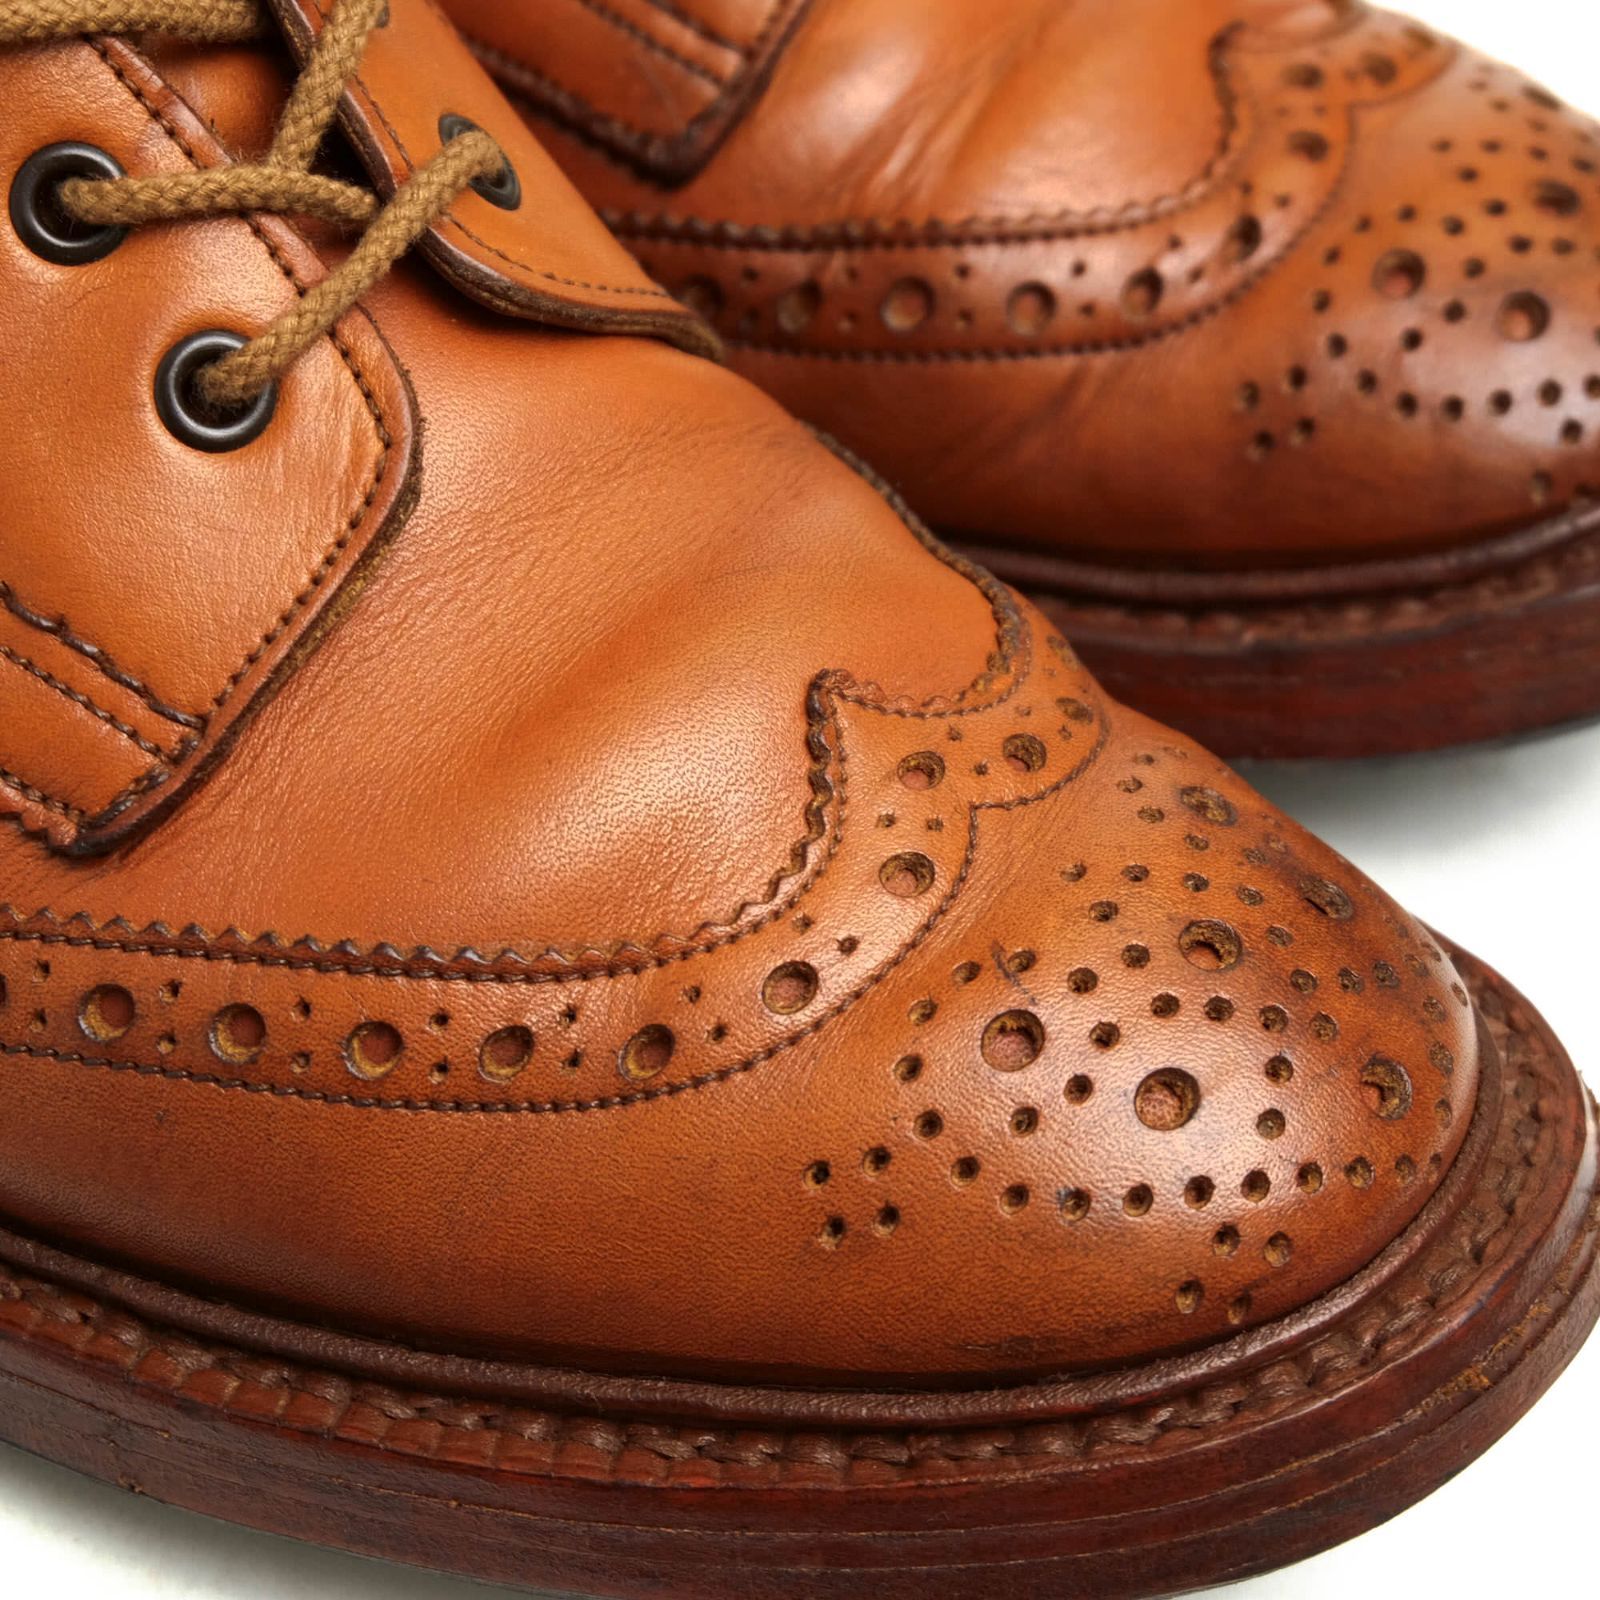 ブーツトリッカーズ／Tricker's レースアップブーツ シューズ 靴 メンズ 男性 男性用レザー 革 本革 ブラウン 茶  M7225 プレーントゥ ダイナイトソール グッドイヤーウェルト製法